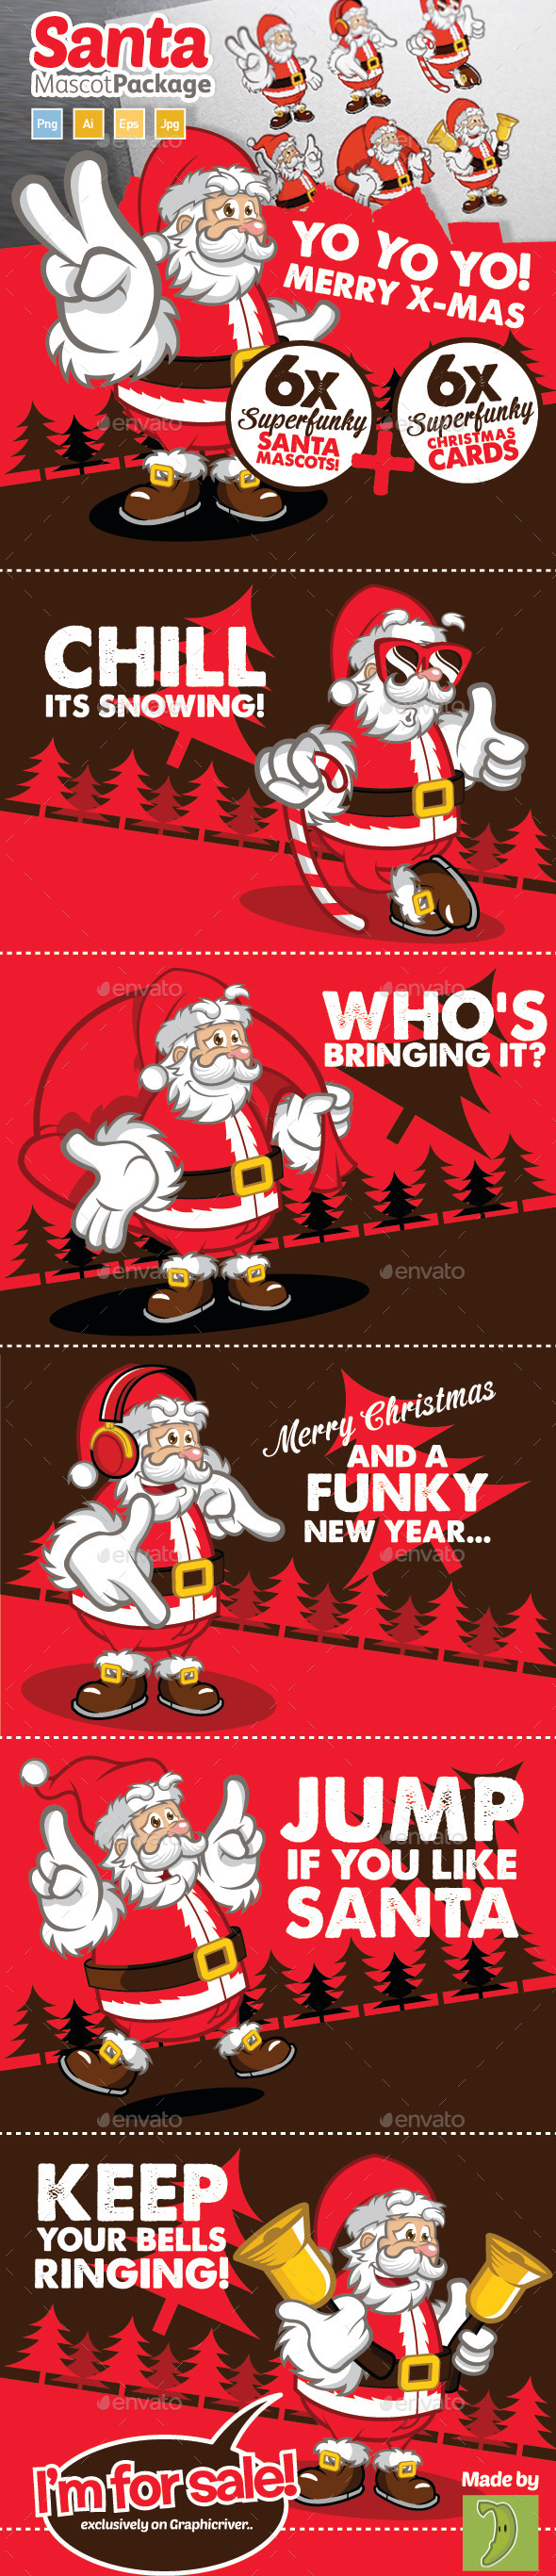 Santa Mascot And Christmas Card